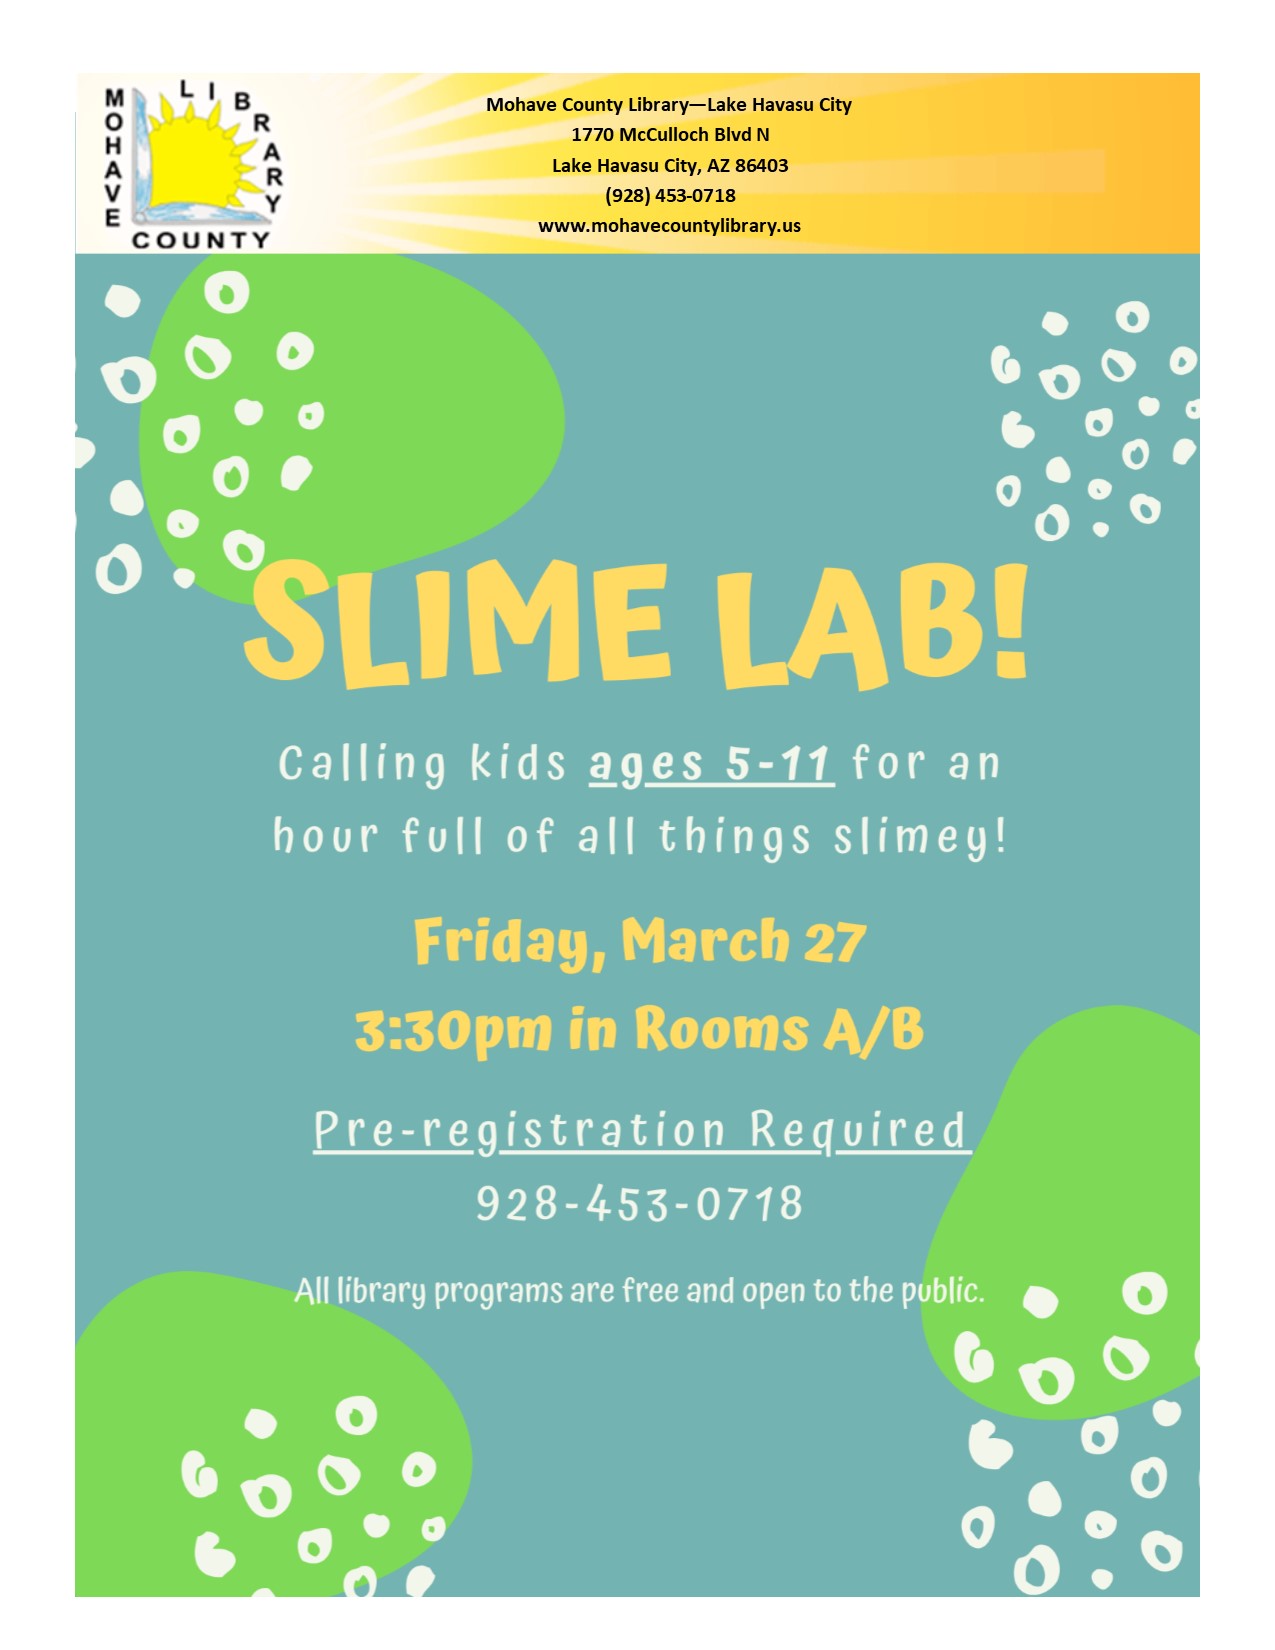 Slime Lab is now postponed